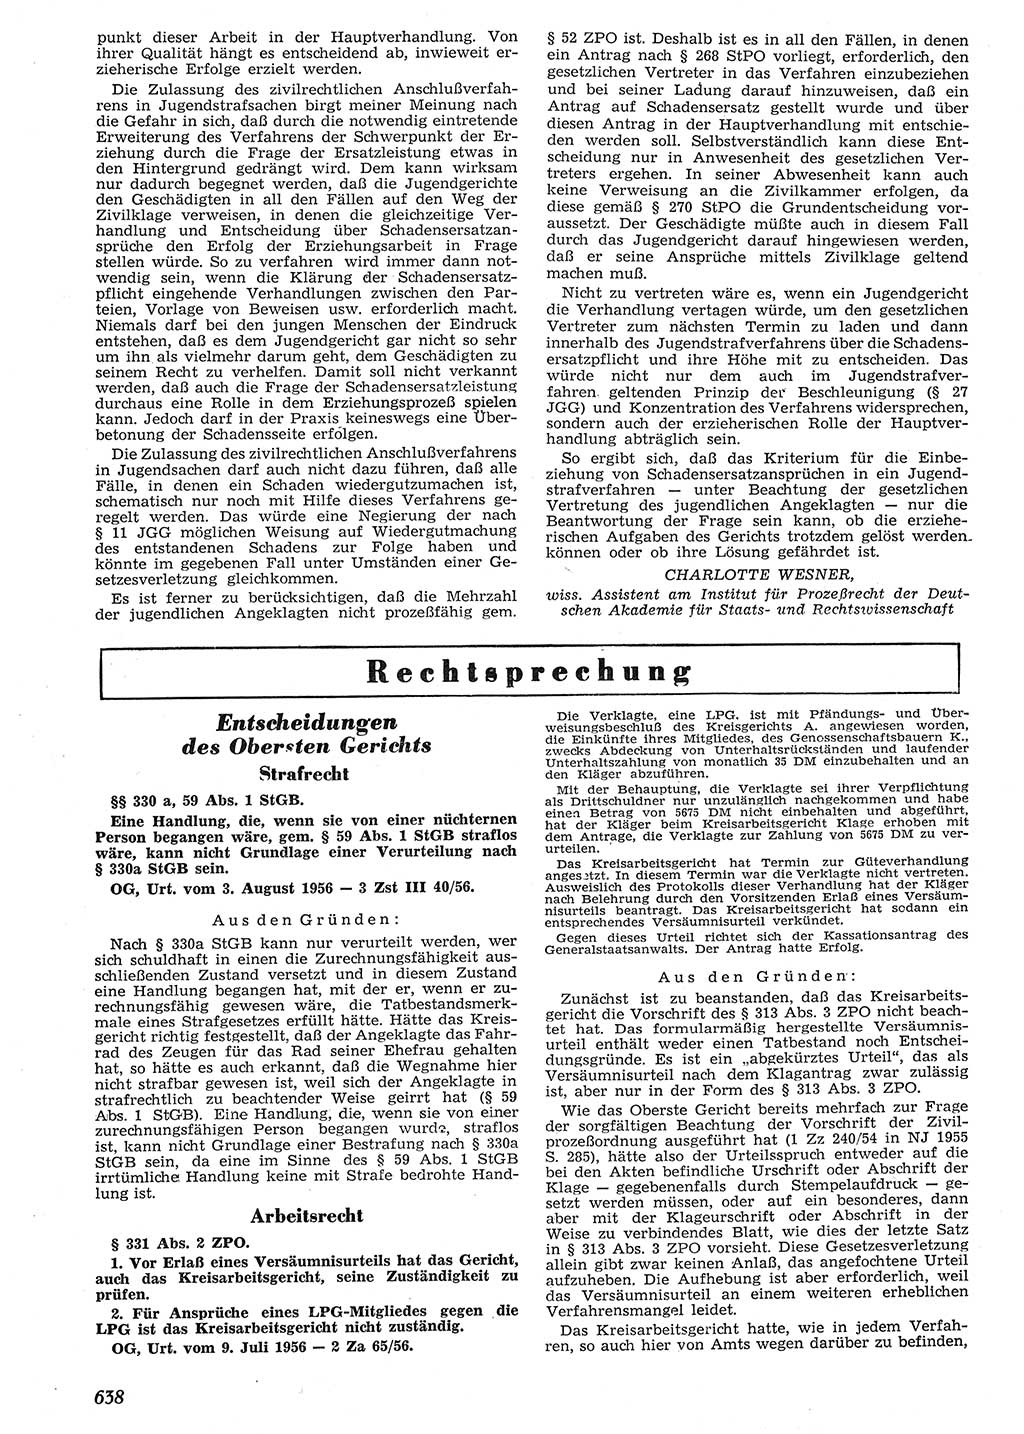 Neue Justiz (NJ), Zeitschrift für Recht und Rechtswissenschaft [Deutsche Demokratische Republik (DDR)], 10. Jahrgang 1956, Seite 638 (NJ DDR 1956, S. 638)